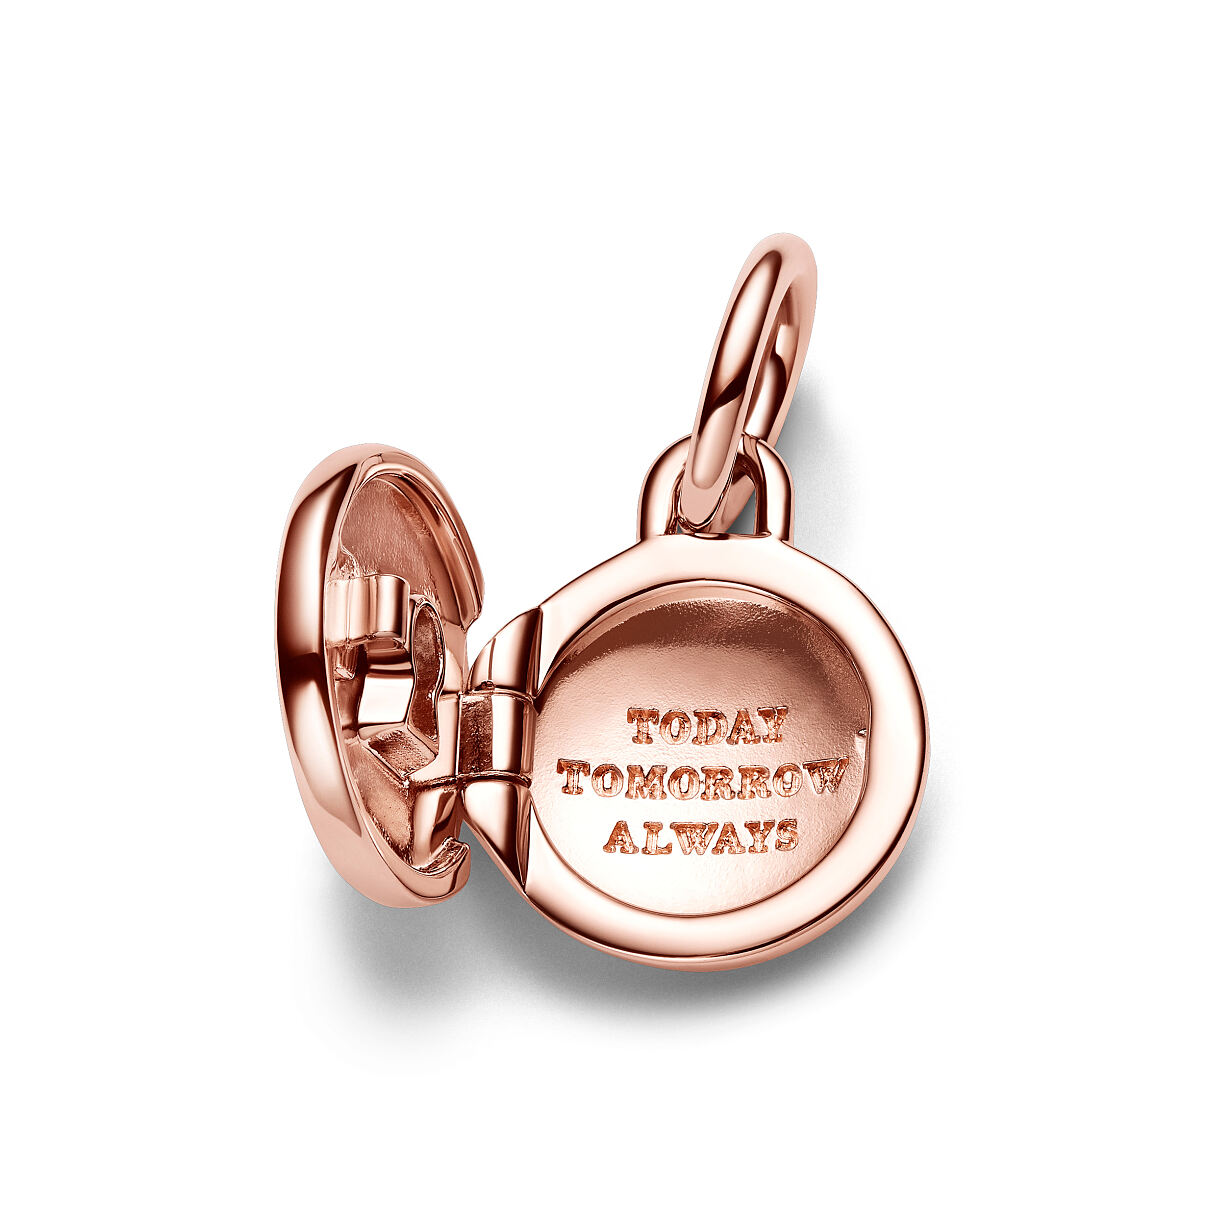 Pandora_Charm_Rose Gold-plated_Aufklappbares und gravierbares Liebesmedaillon Charm-Anhänger763066C01_79,00 Euro (5)